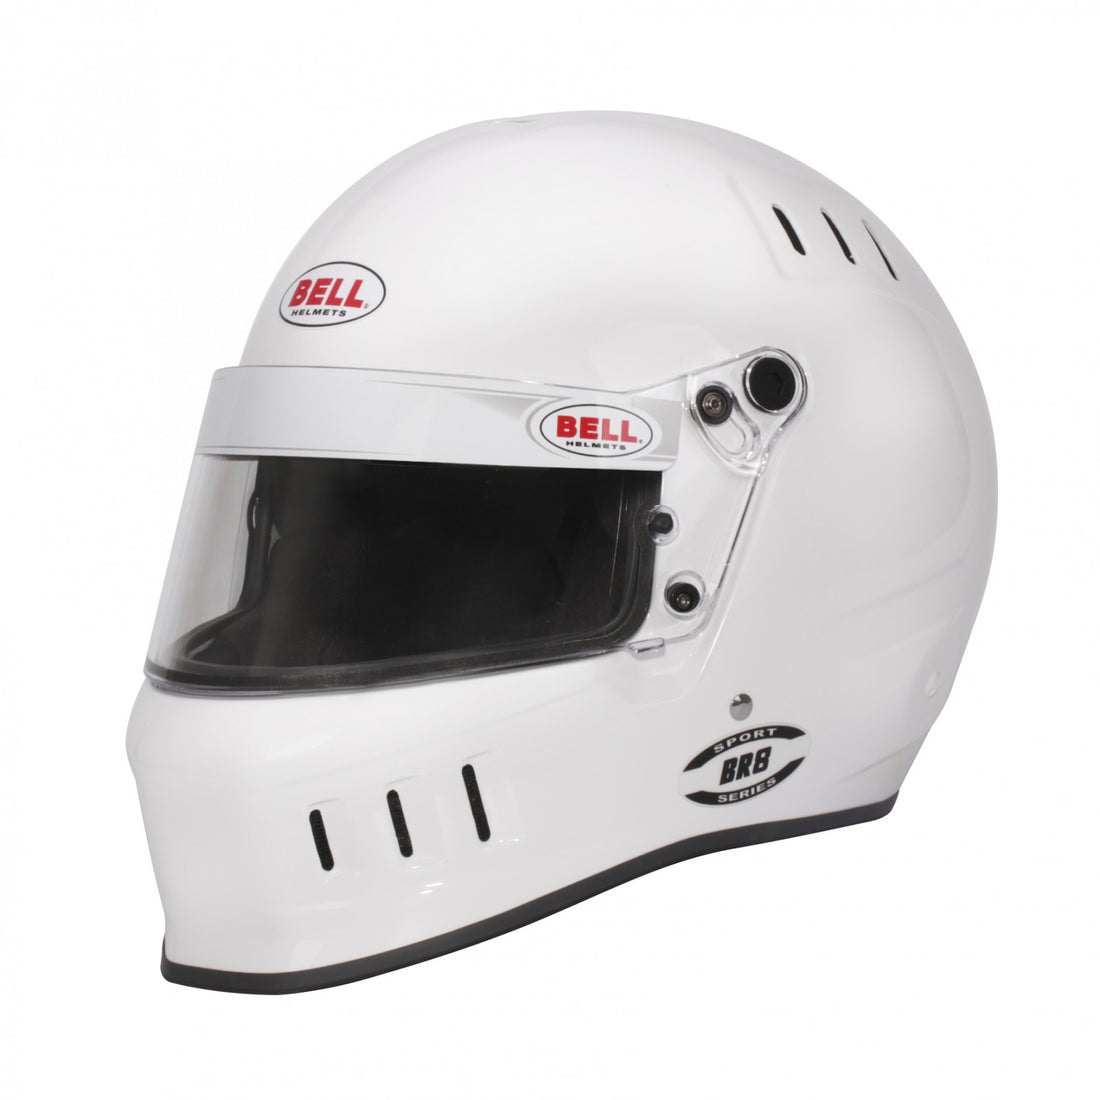 Bell BR8 White Helmet Size Large